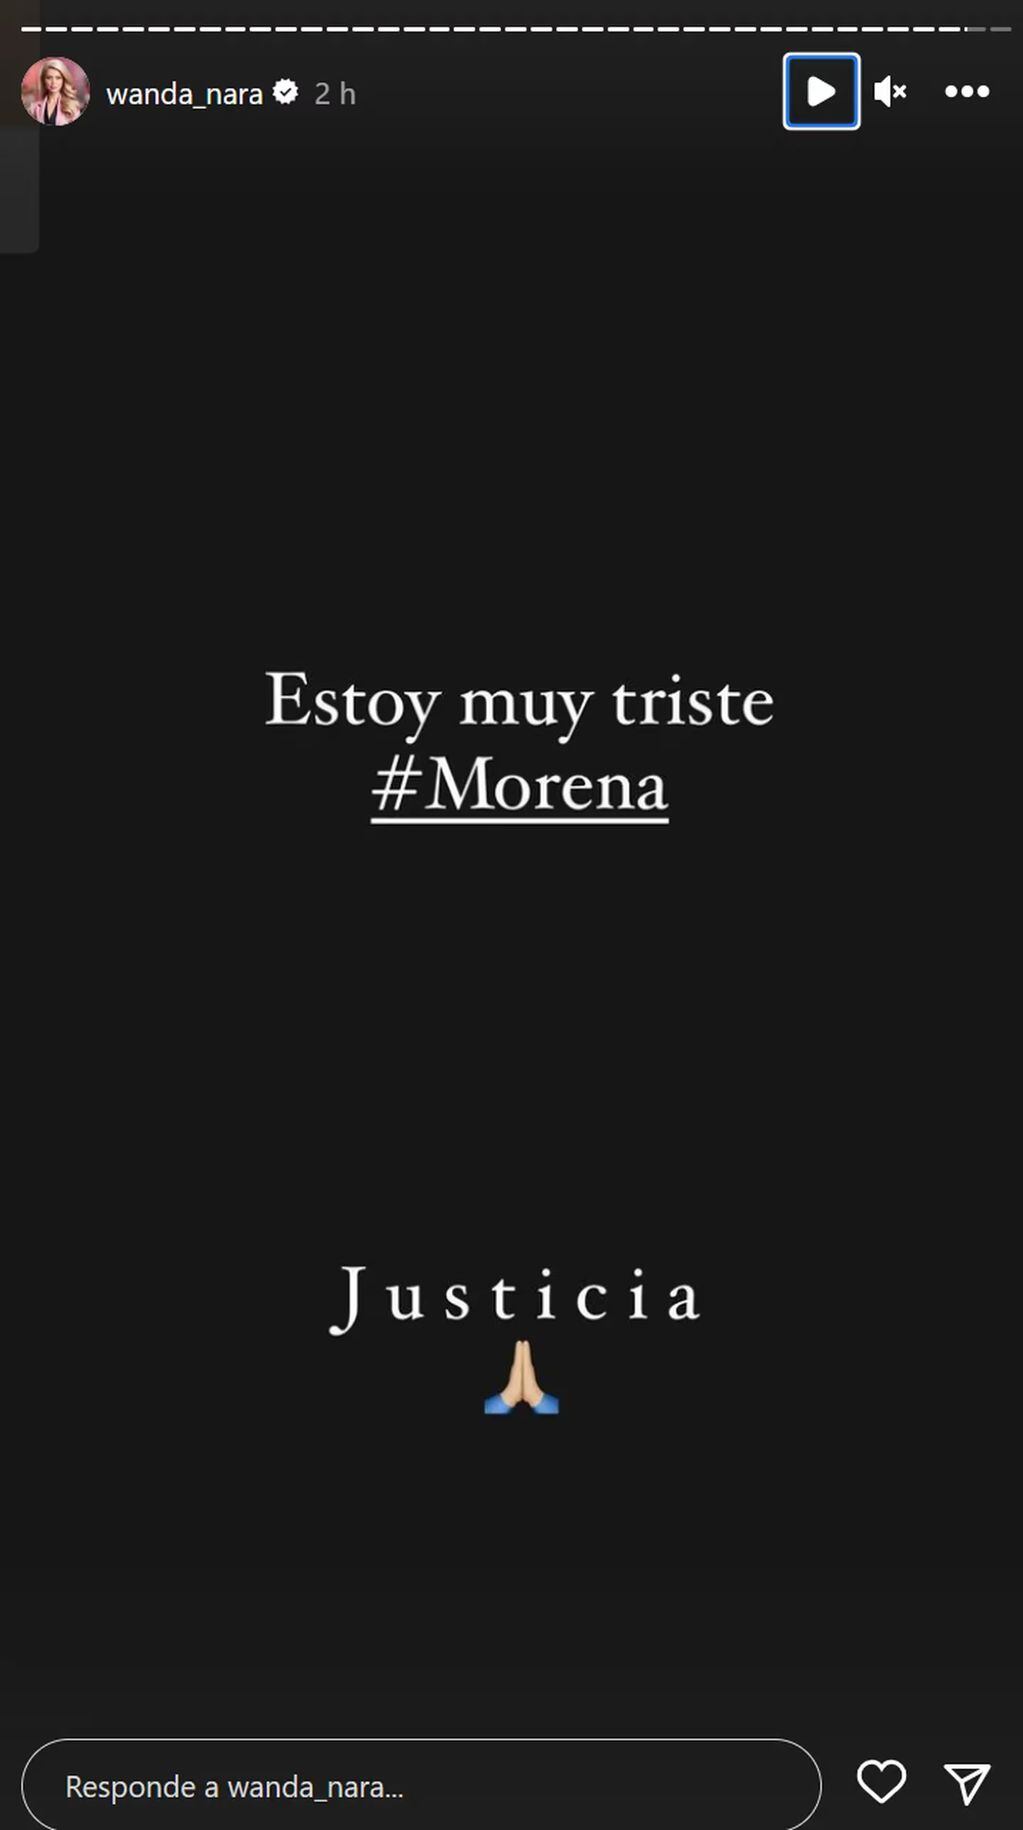 El mensaje de Wanda Nara por el crimen de Morena